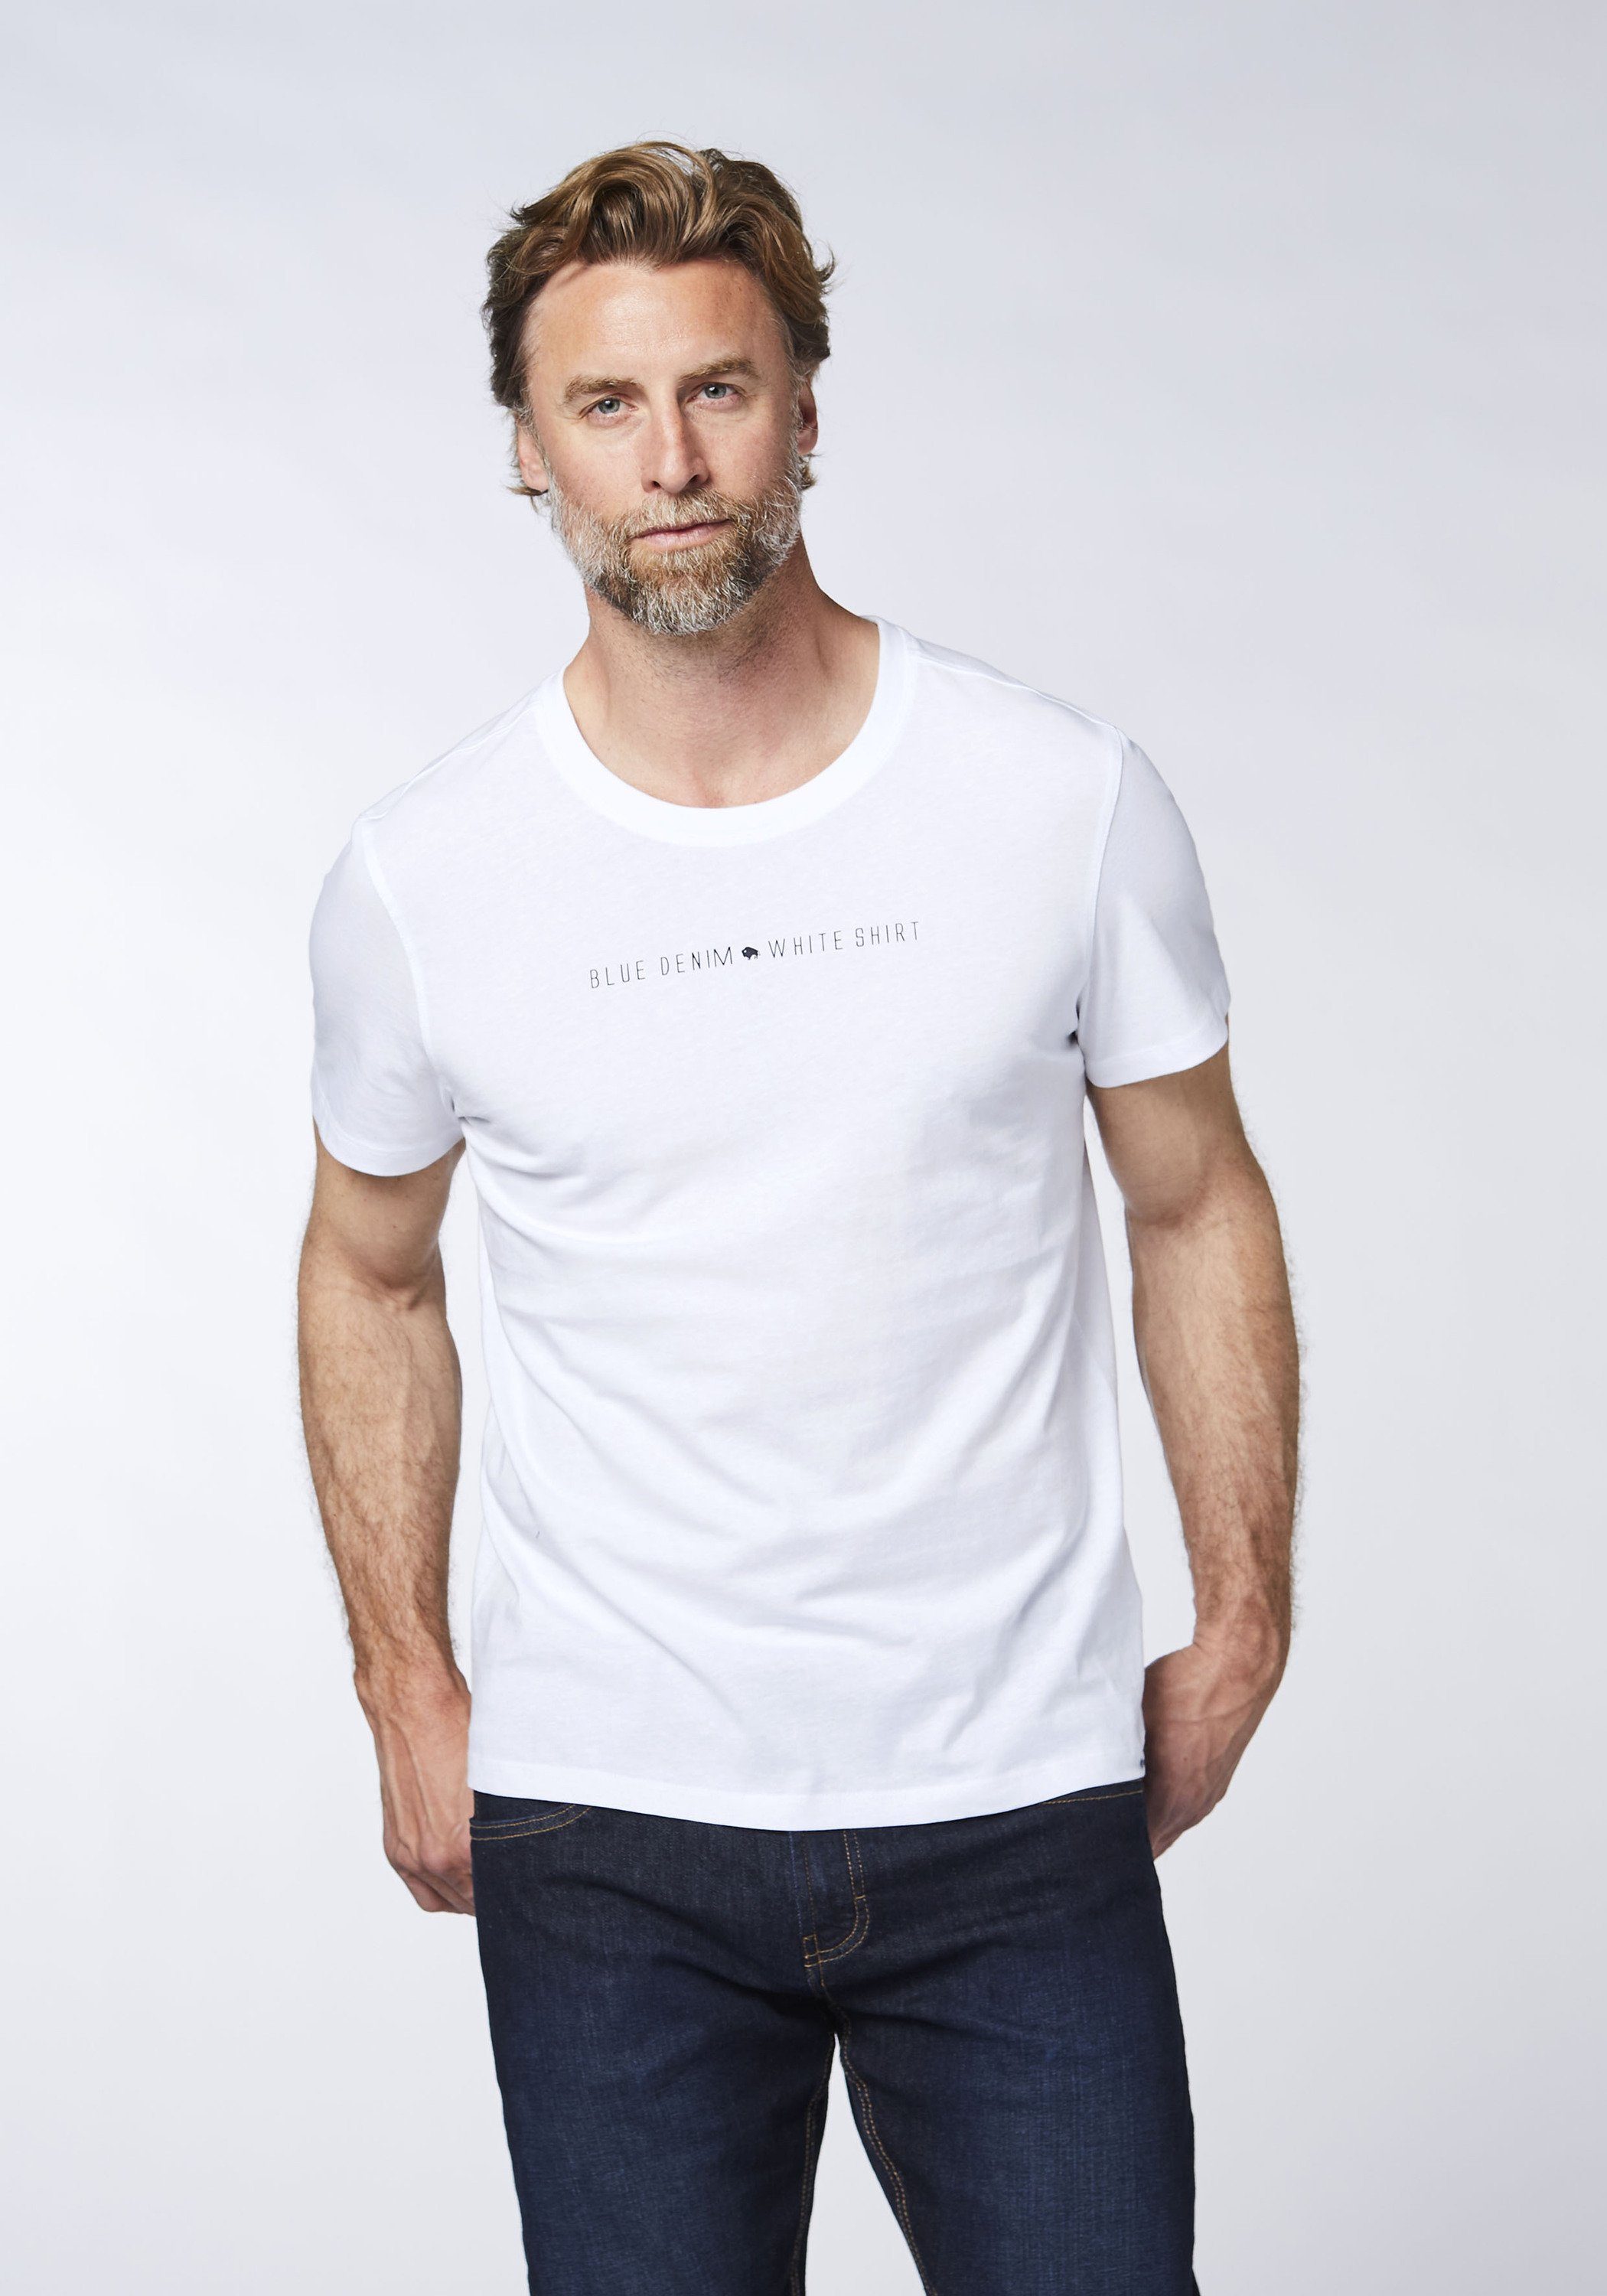 Sweatware White DENIM weicher Print-Shirt COLORADO Bright 11-0601 aus